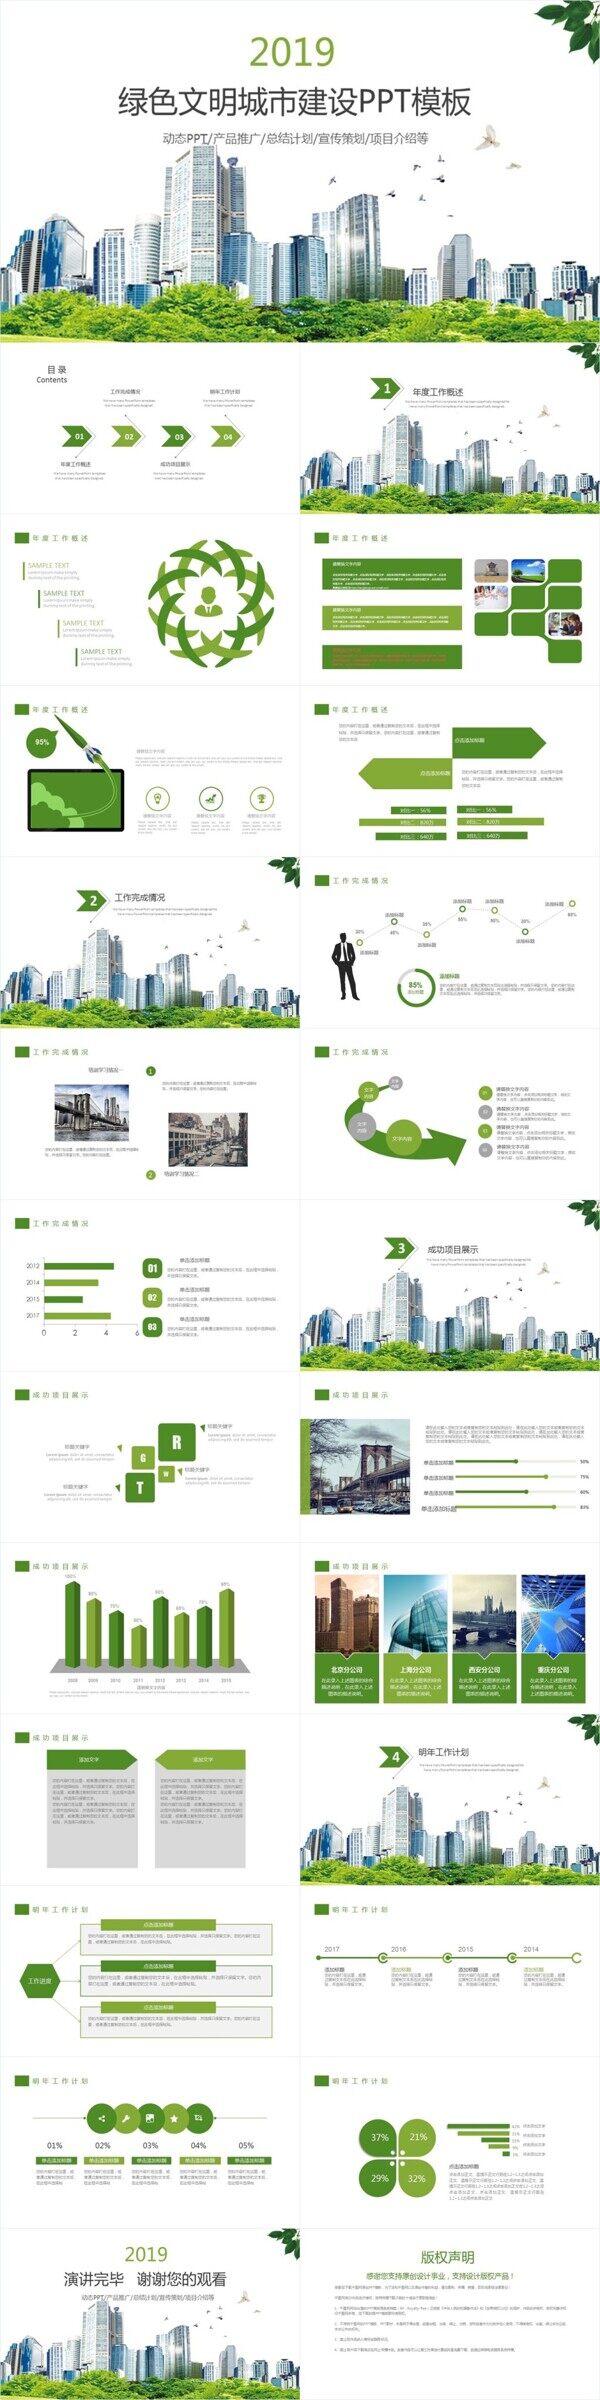 文明城市建设城市规划社区创建PPT模板